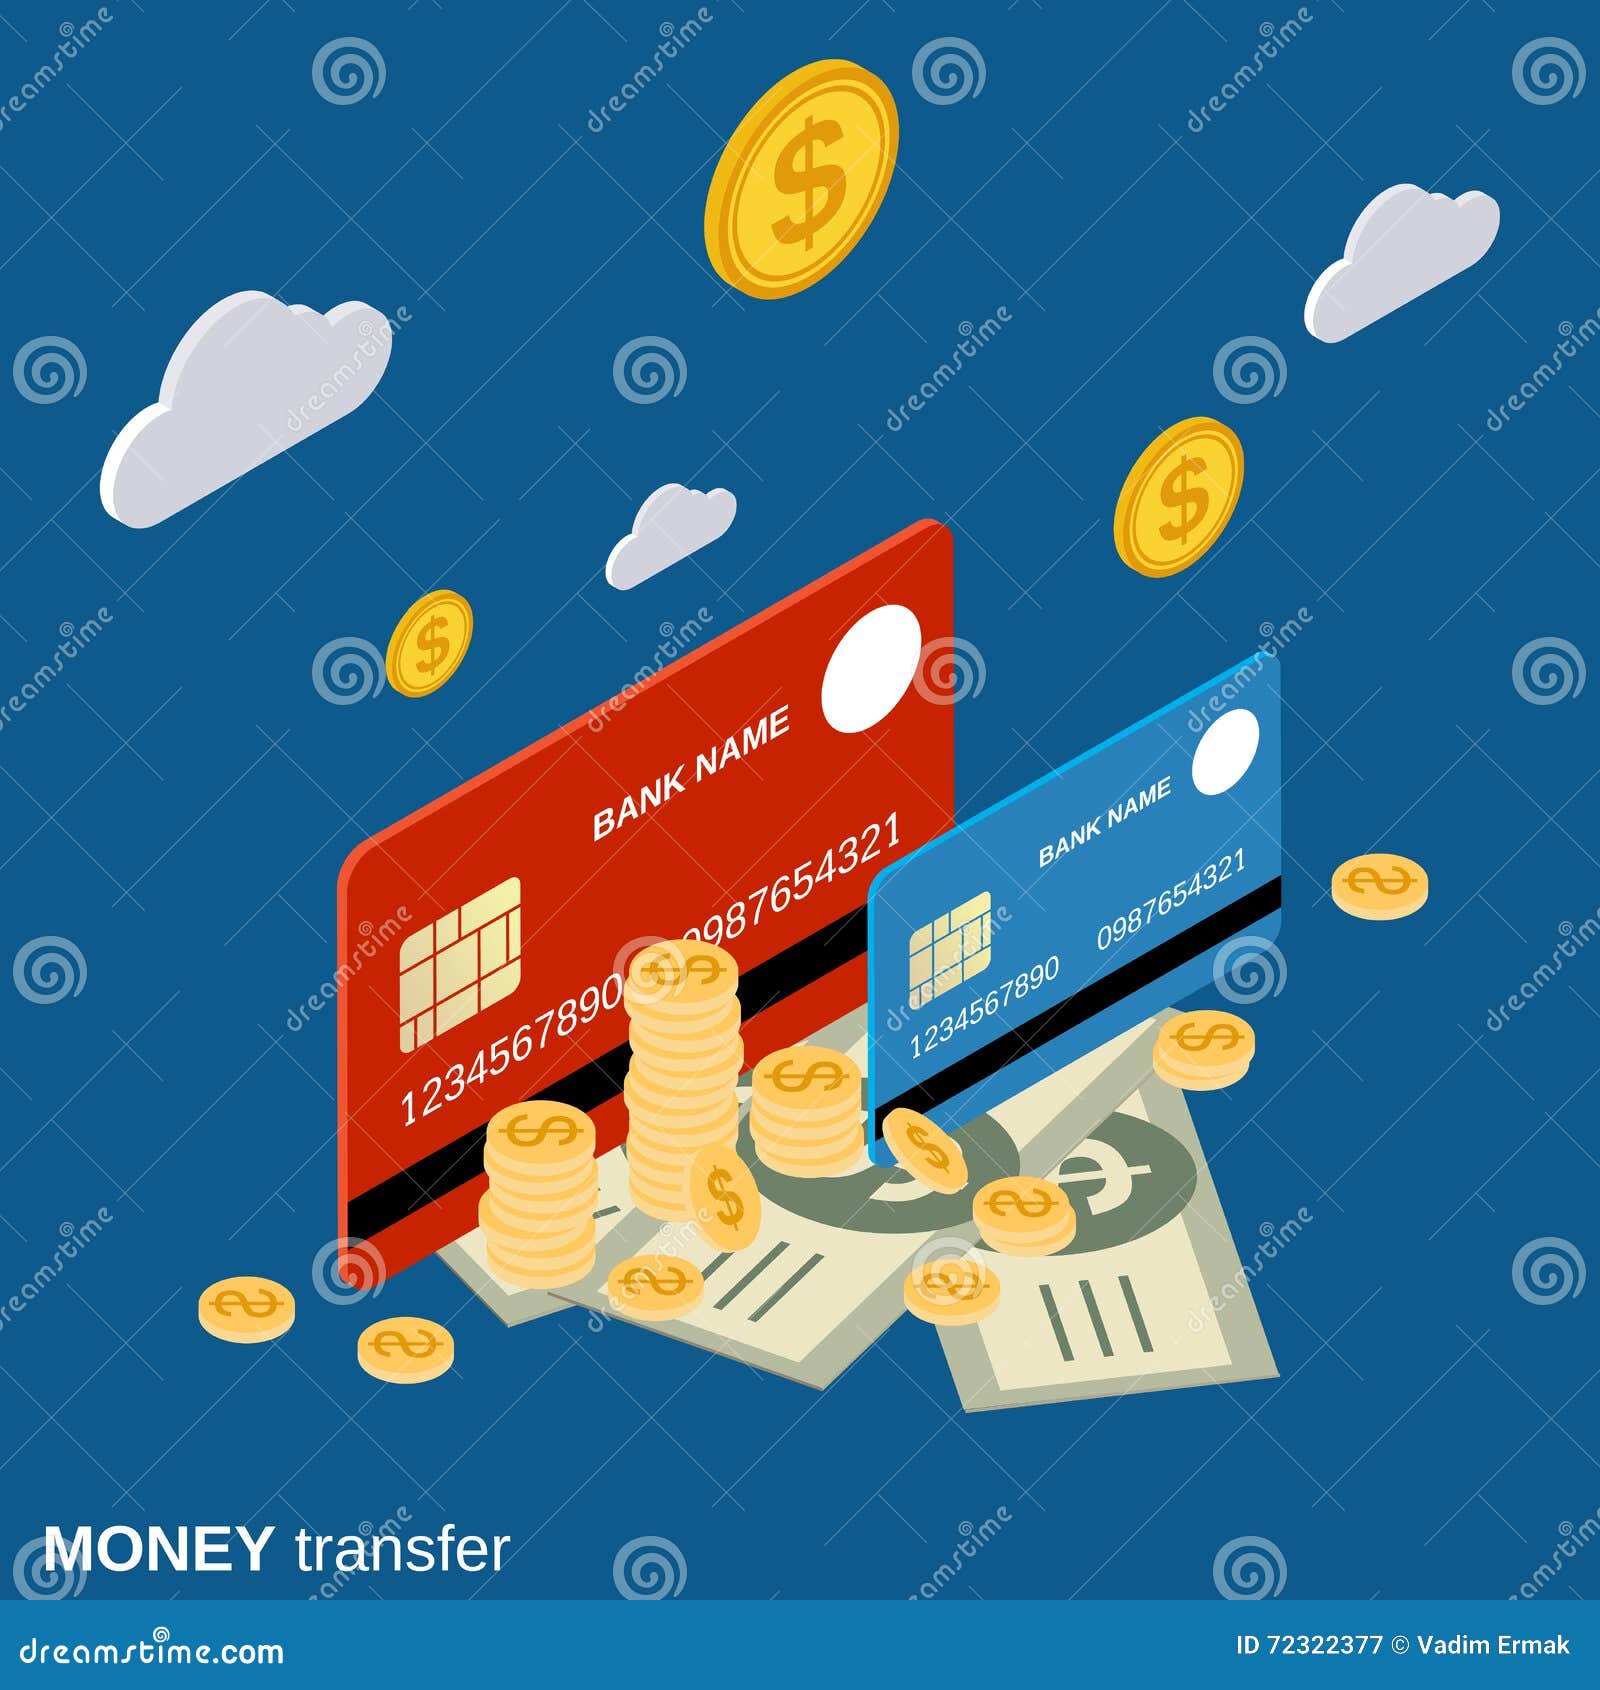 Bank money transfer. Денежные переводы иллюстрация. Money transfer. Картинки финансовые транзакции. Транзакция иллюстрация.